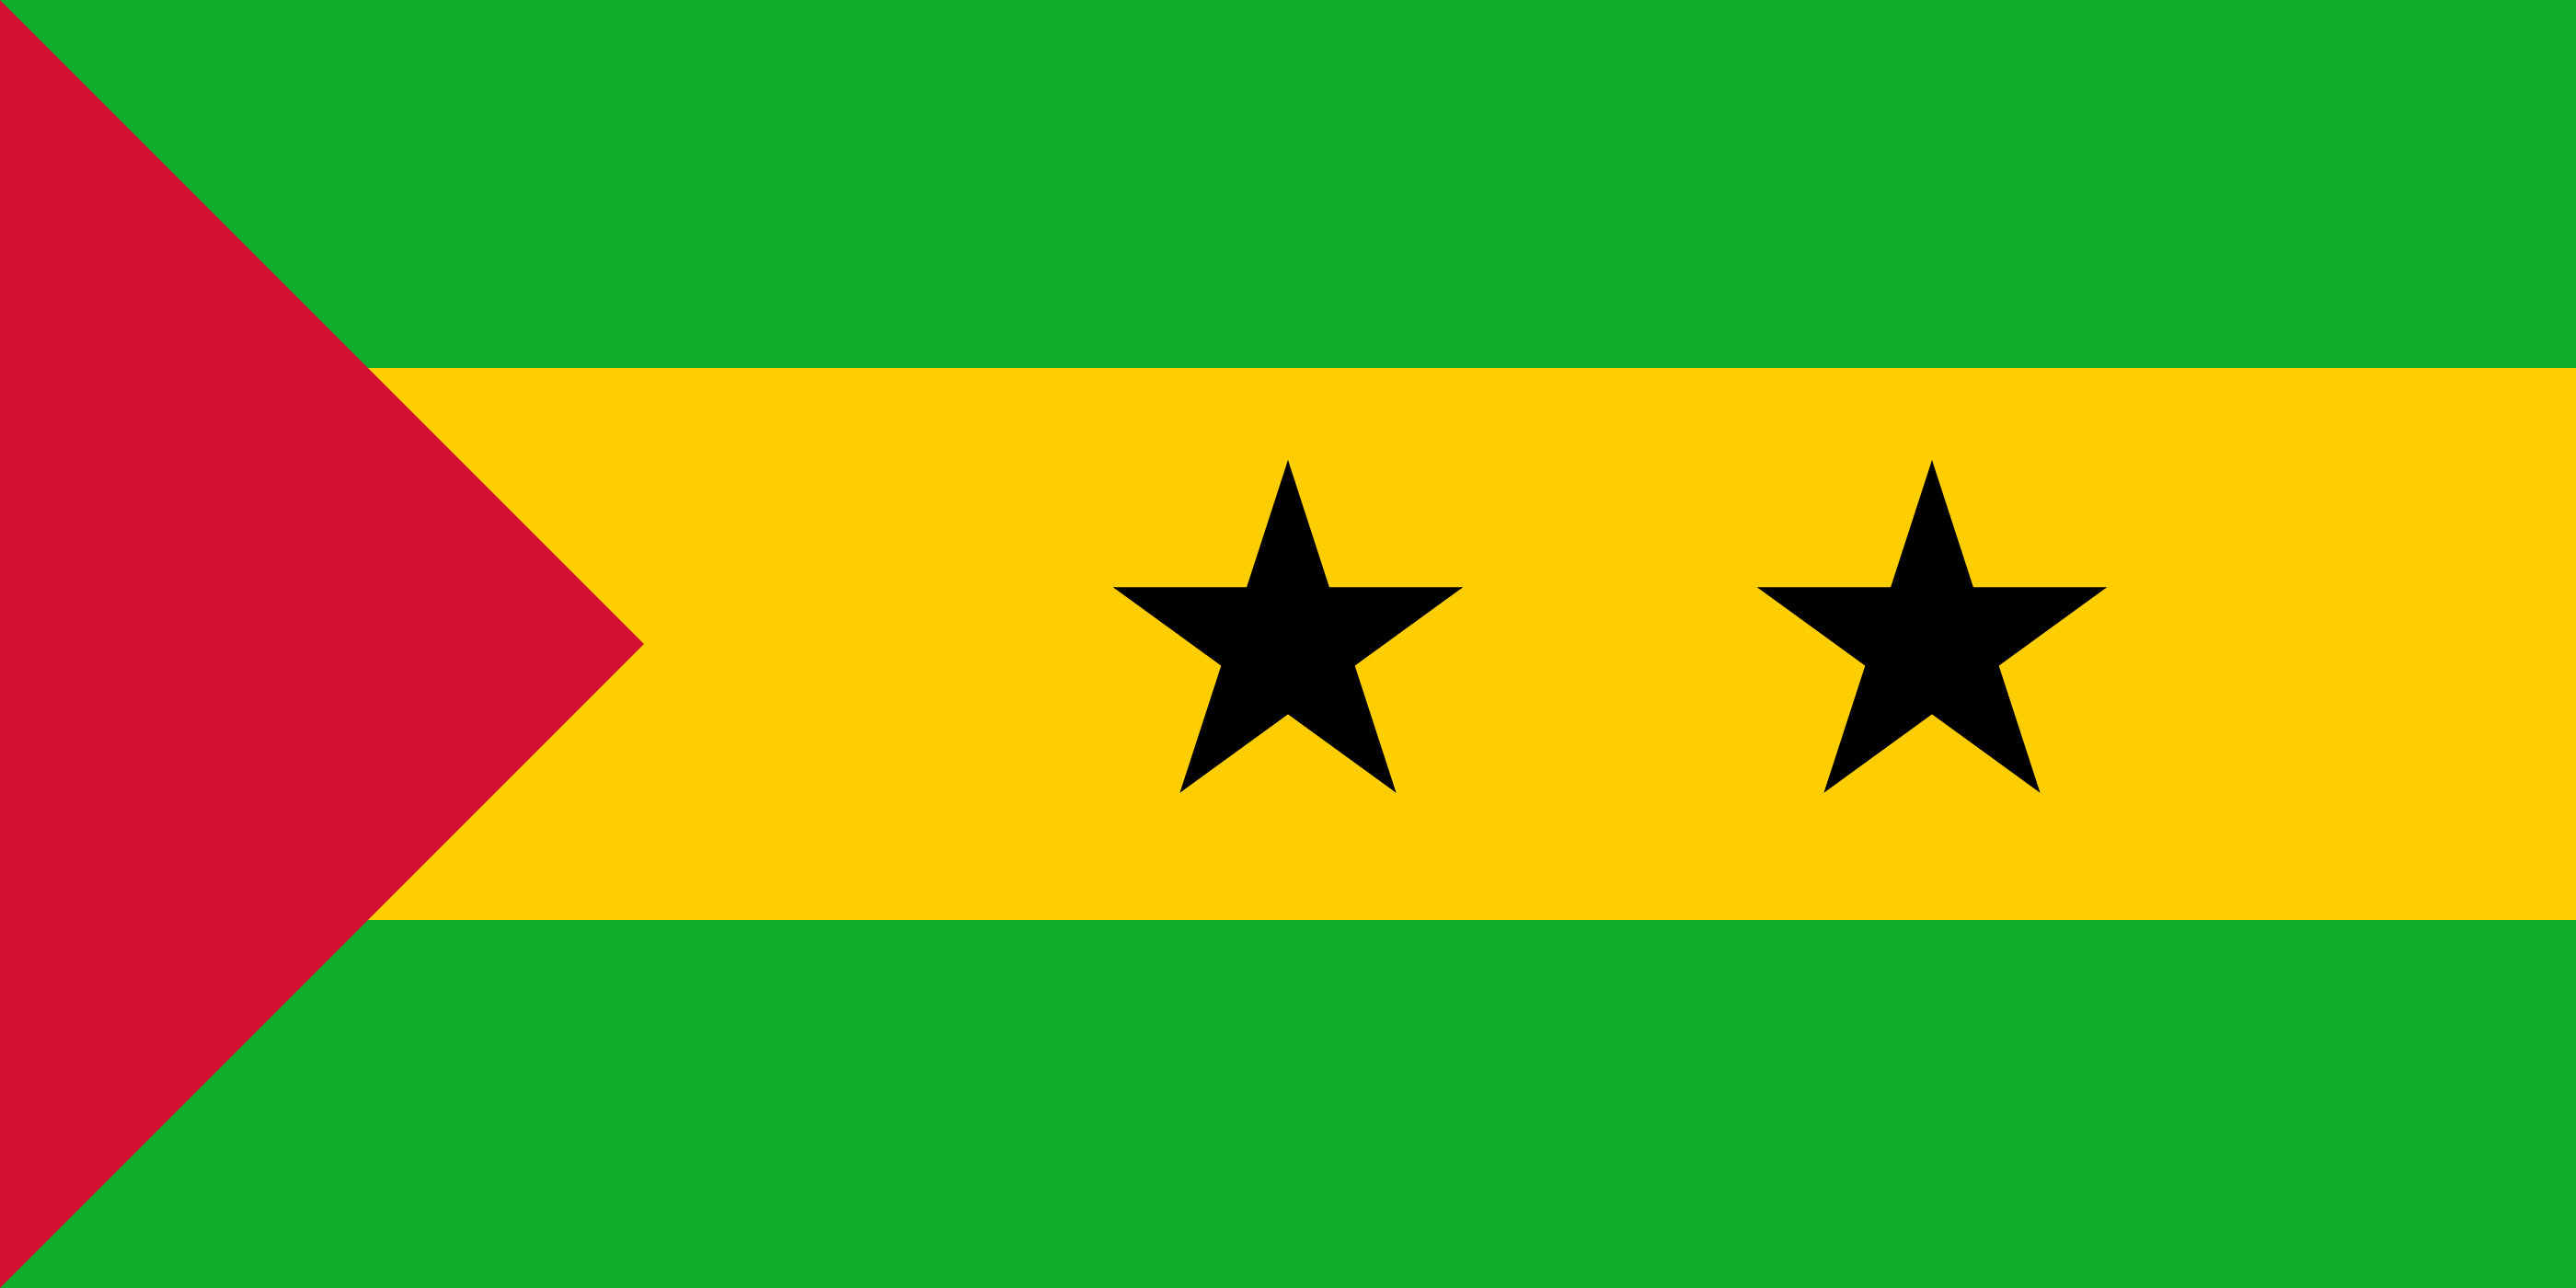 São Tomé & Príncipe flag